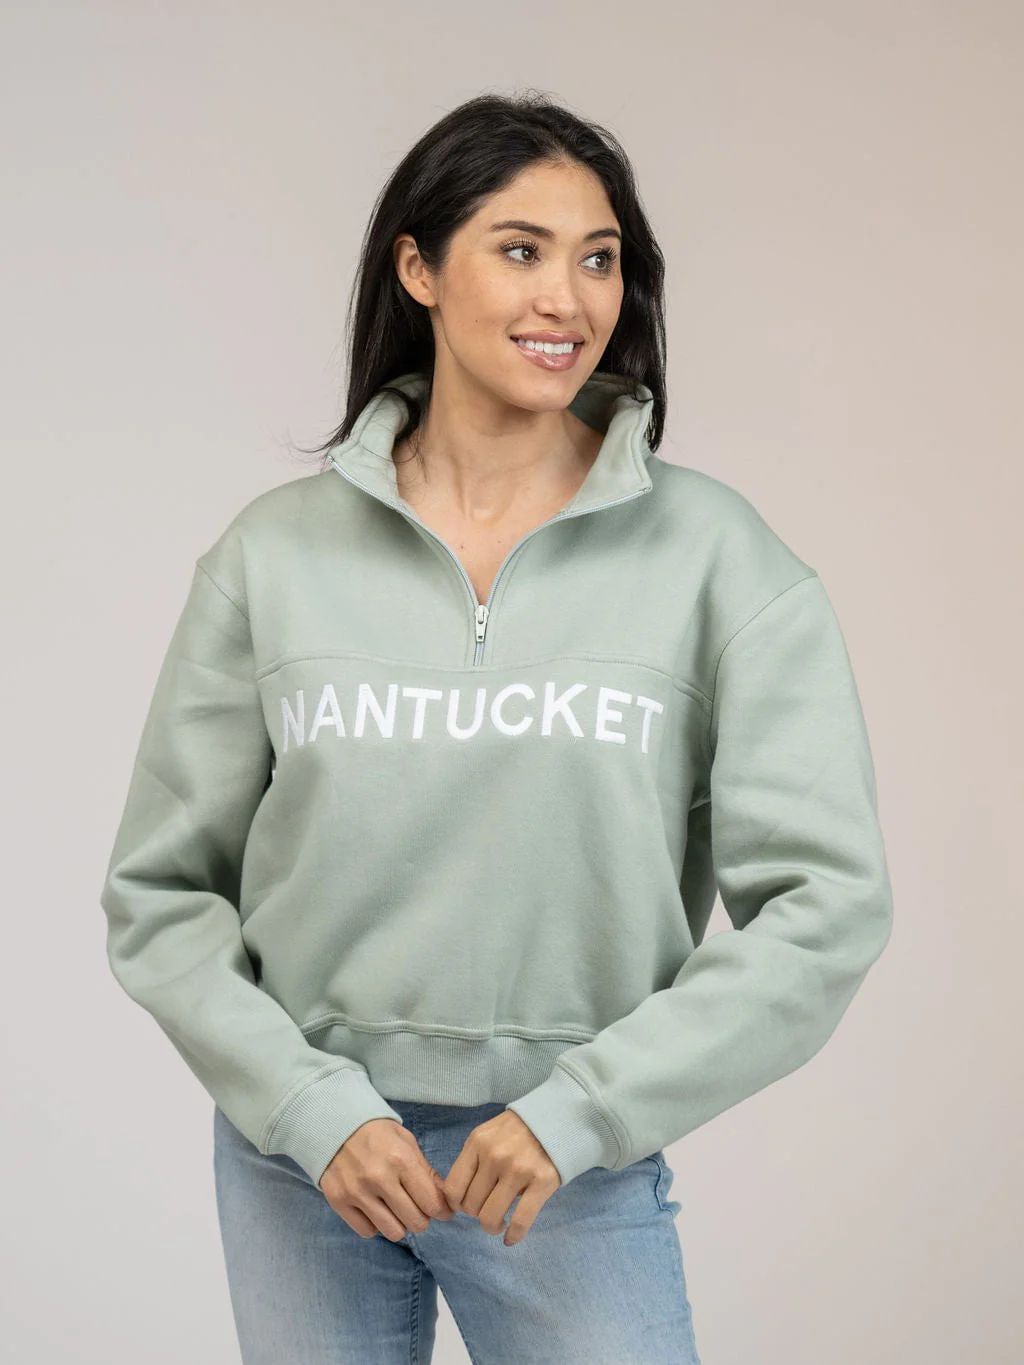 Nantucket Half Zip Sweatshirt in Green | Beau & Ro